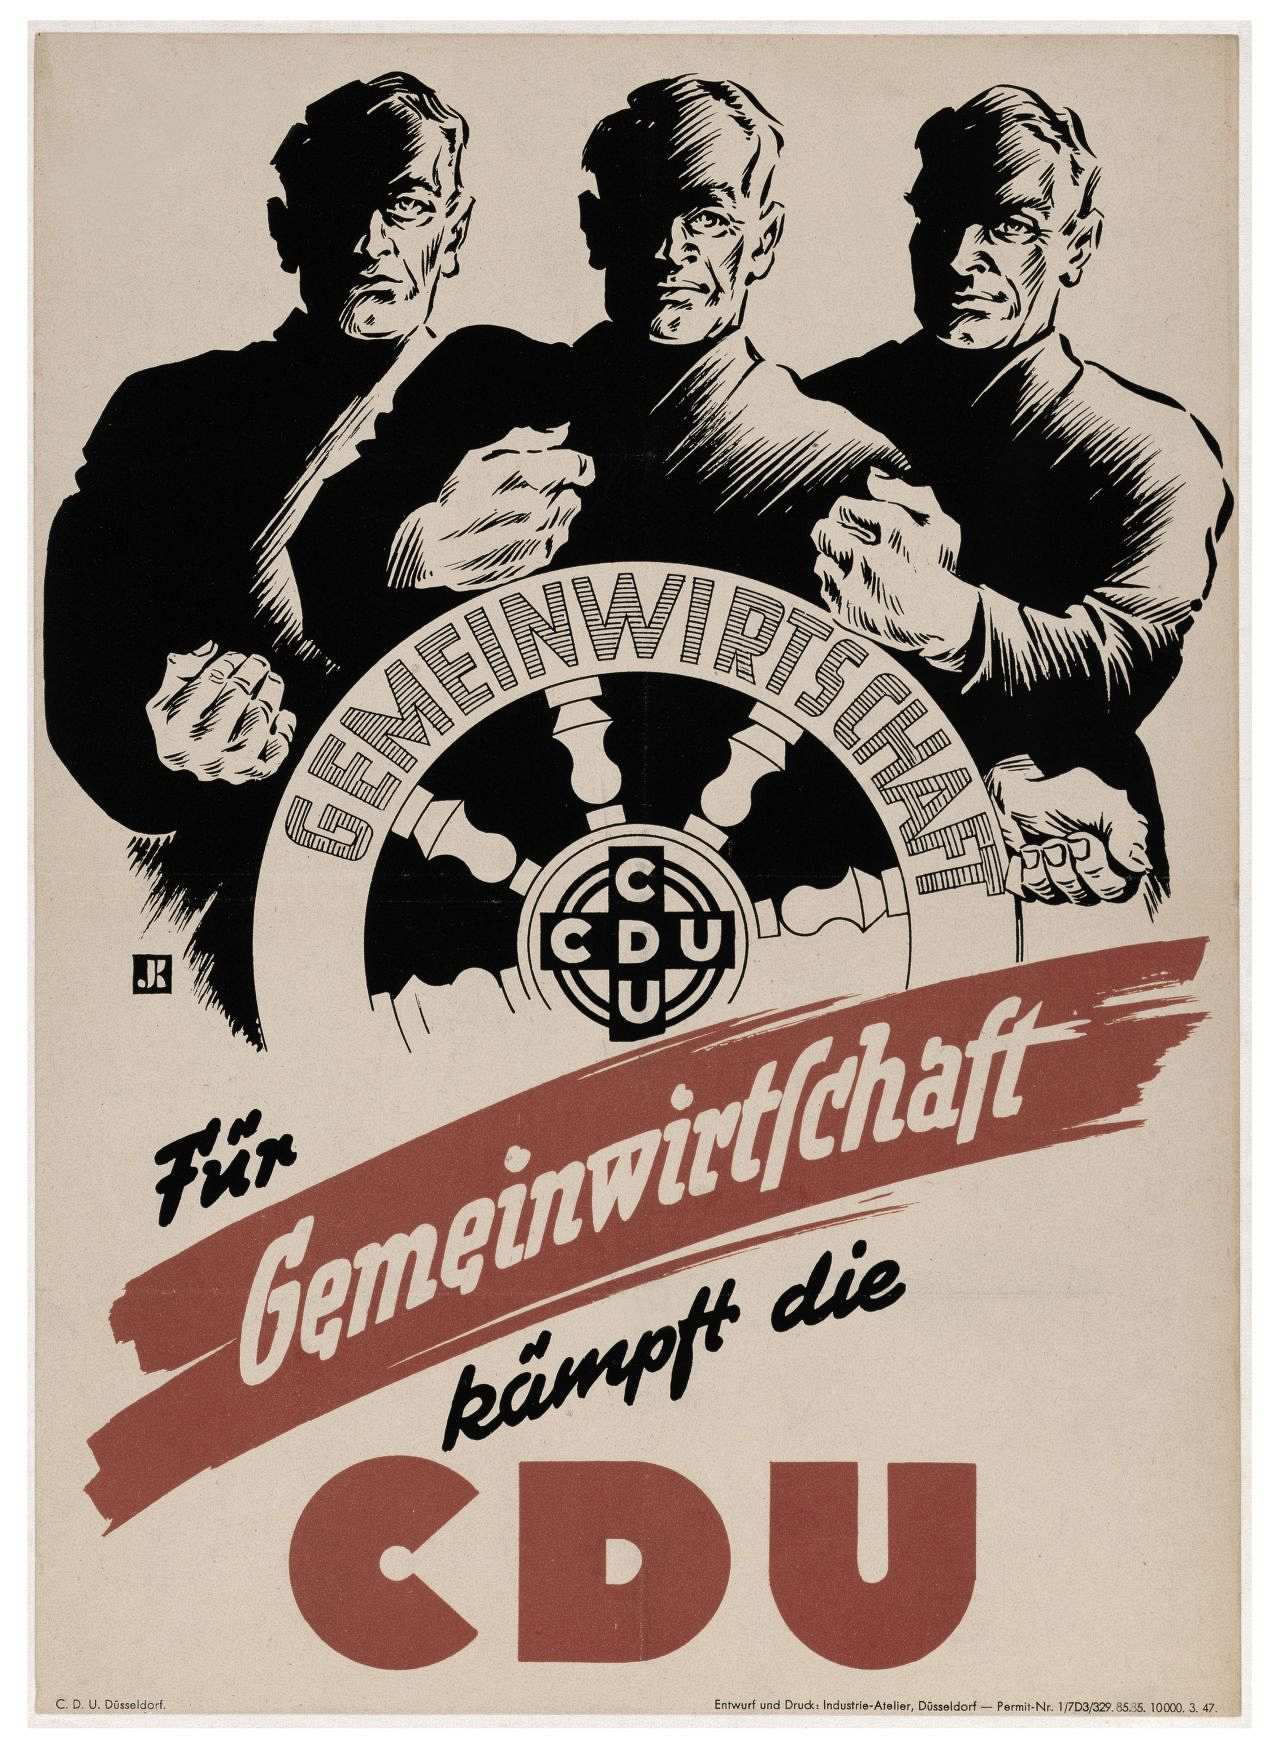 Bräunliches Plakat mit der Abbildung dreier Männer, die ein Steuerrad halten. Auf dem Steuerrad: Gemeinwirtschaft CDU (schwarz-weiße Zeichnung). Darunter: Für Gemeinwirtschaft kämpft die CDU.